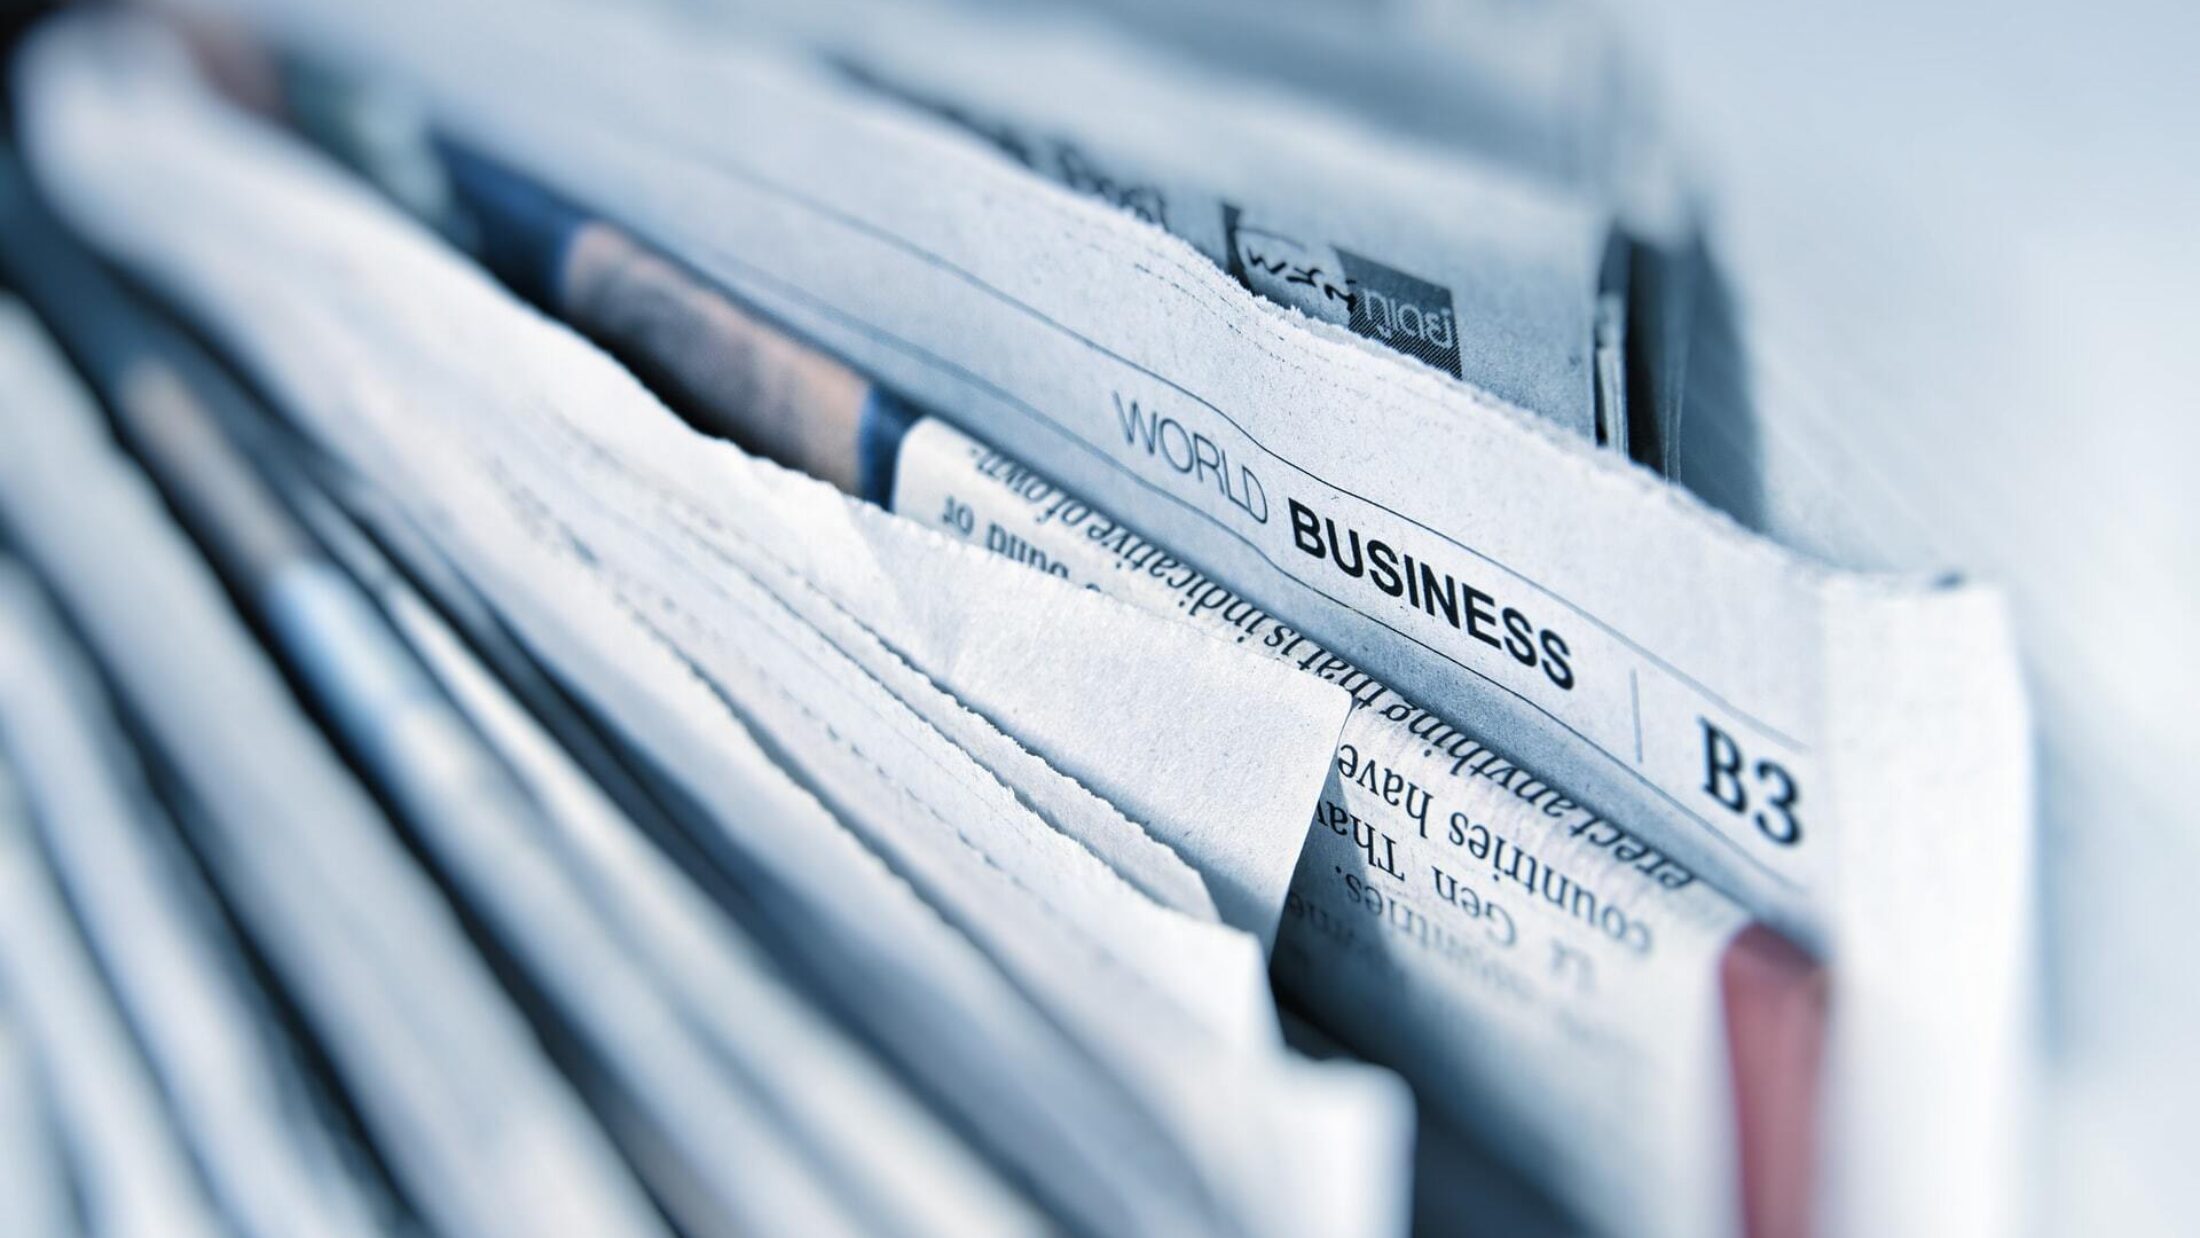 Ein Stapel Zeitungen mit dem Fokuspunkt auf die Überschrift "World Business"